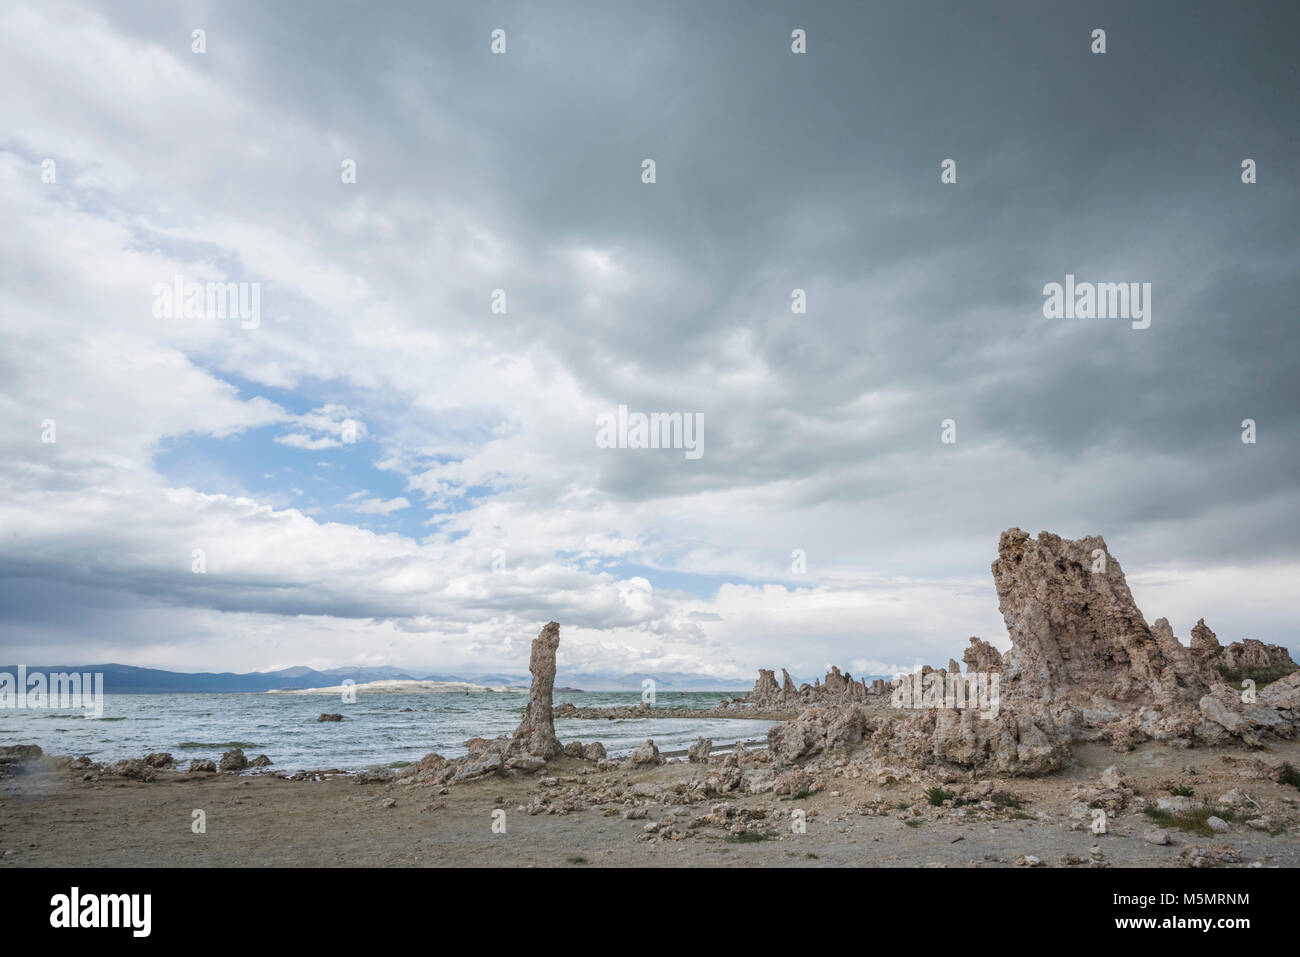 Avec les nuages de tempête de sable, brassage tufas debout sur le lac Mono, marquant l'eau salée au cours des millénaires de récession à Lee Vining, Californie Banque D'Images